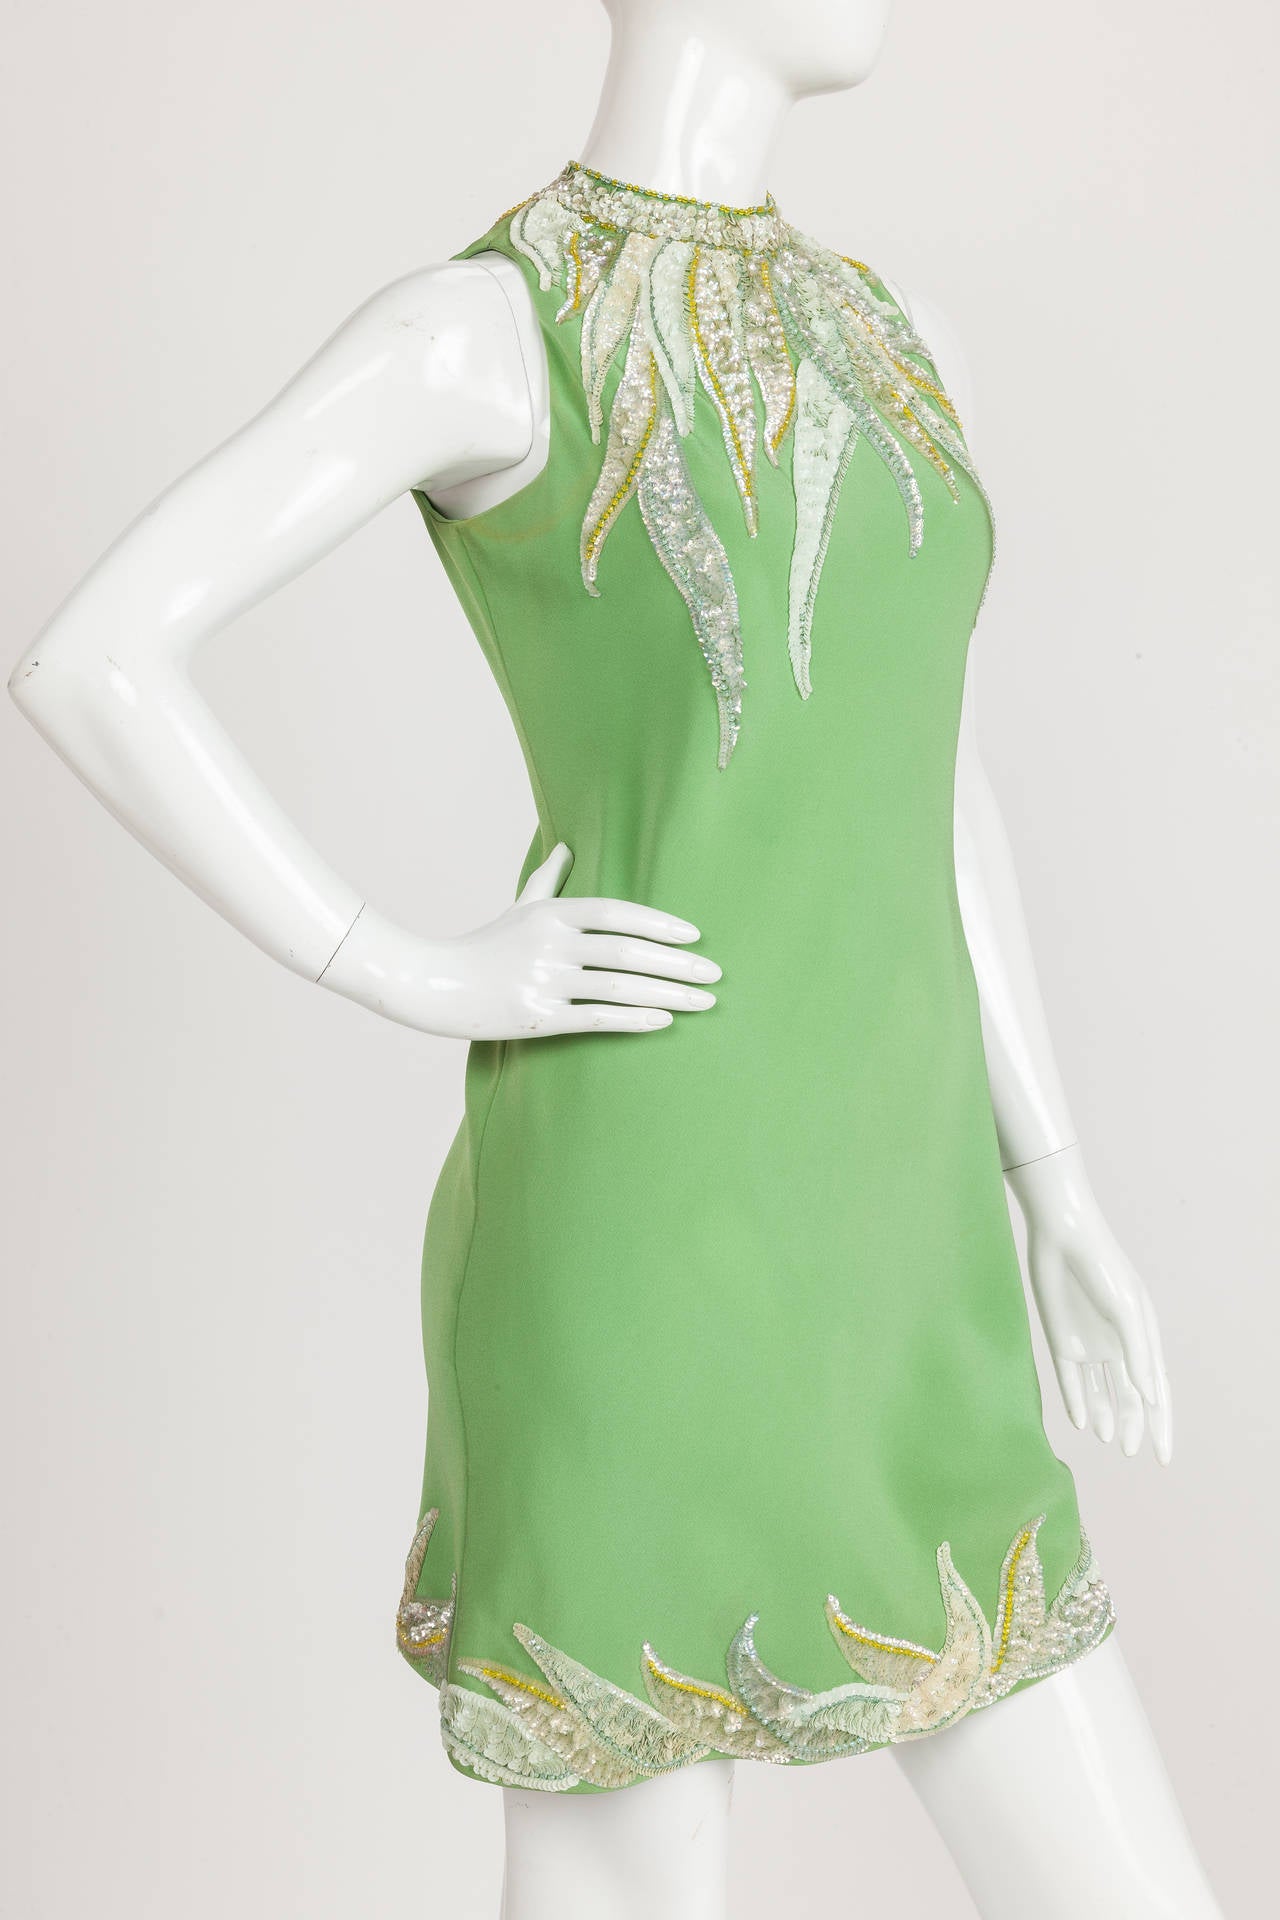 Robe de cocktail en crêpe de soie pailletée verte Pierre Cardin haute couture, circa 1967, avec ouverture en trou de serrure dans le dos. L'attrait principal de cette robe de cocktail en soie fluide réside dans les nuances de jaune, de vert et de